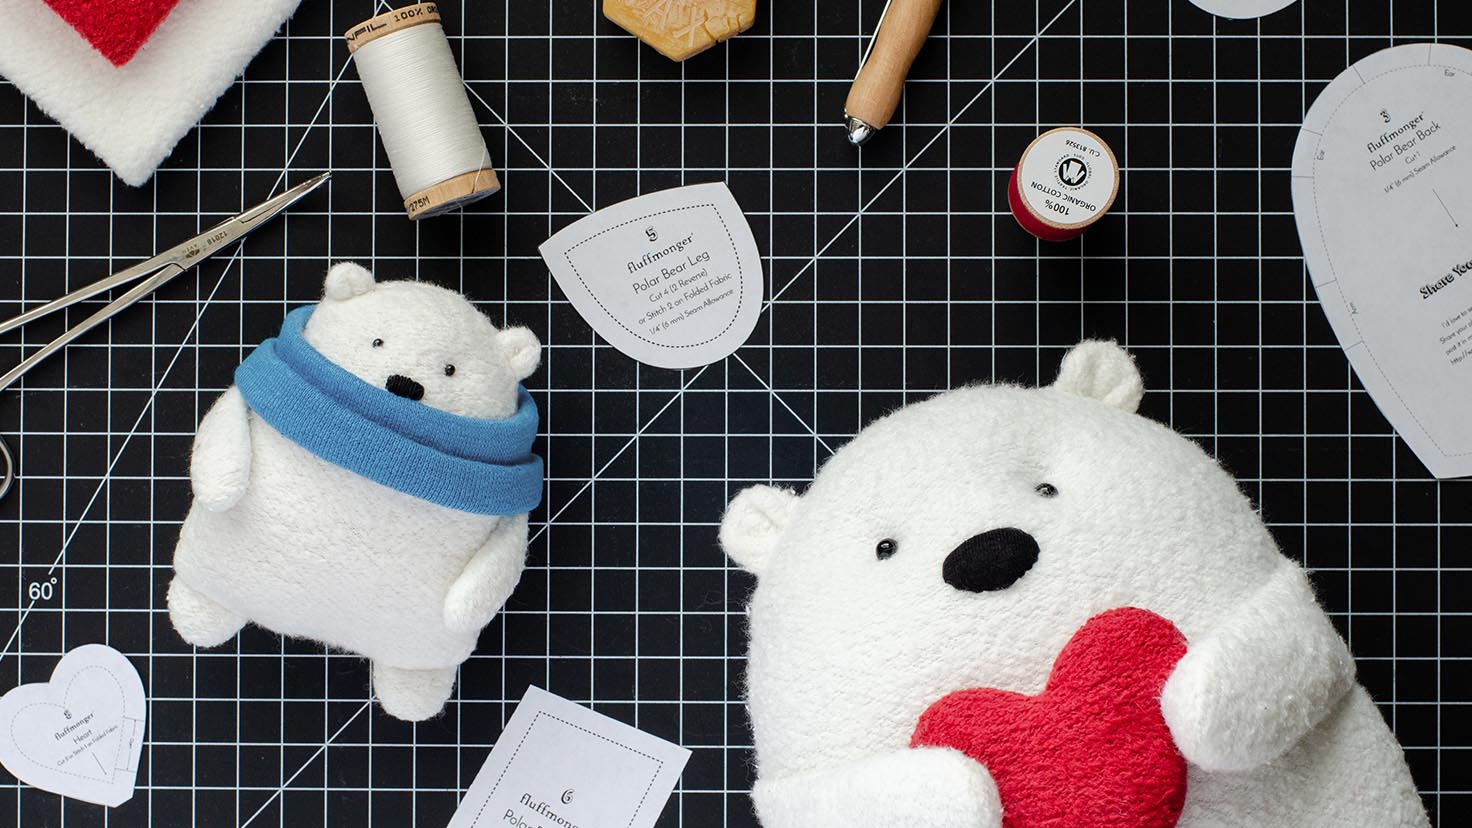 DIY Fabric Teddy Bear Free Sewing Patterns